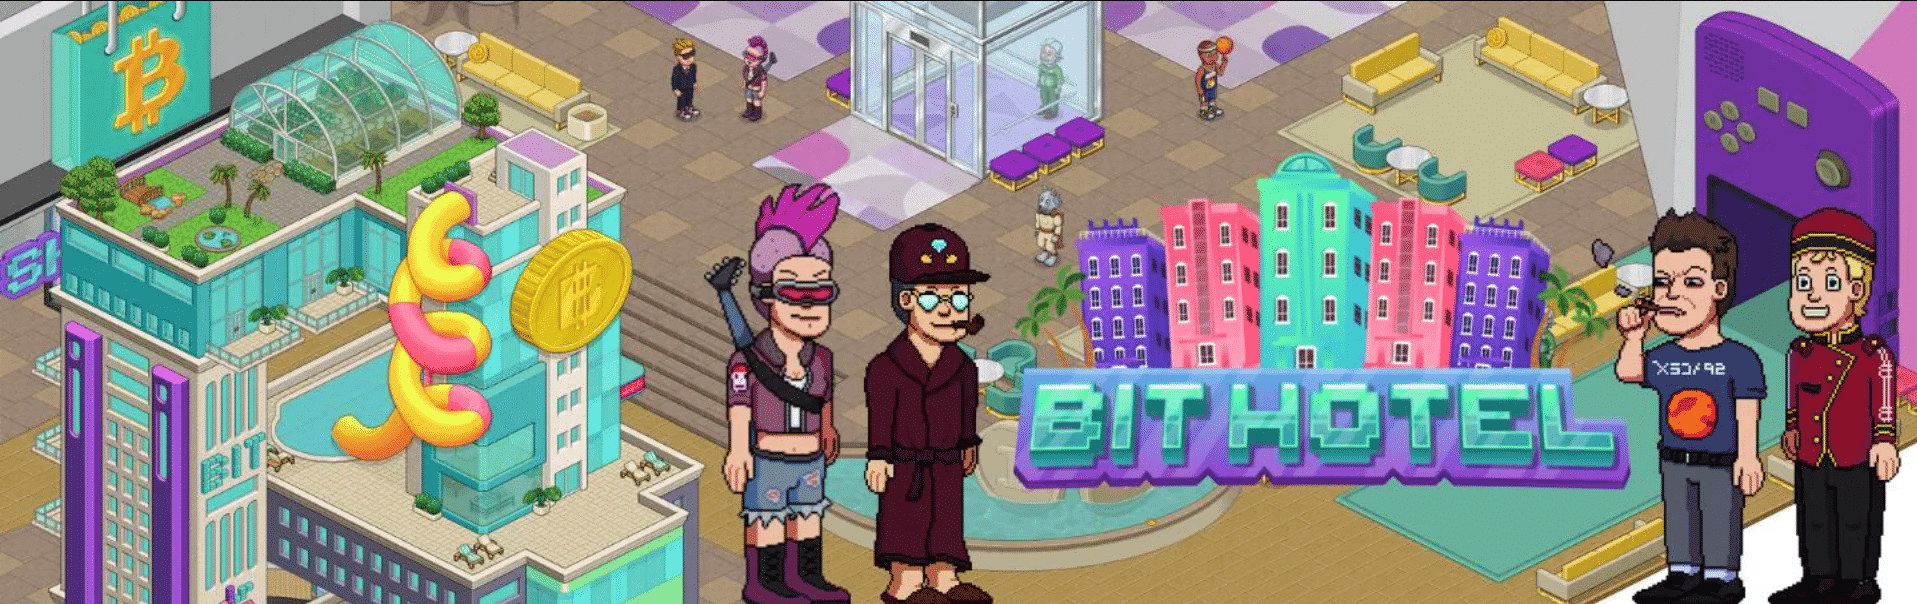 Bit Hotel est un jeu NFT en ligne sur le réseau Ferrum avec une dynamique sociale de jeu pour gagner où les joueurs collectent des objets NFT pour gagner des récompenses.